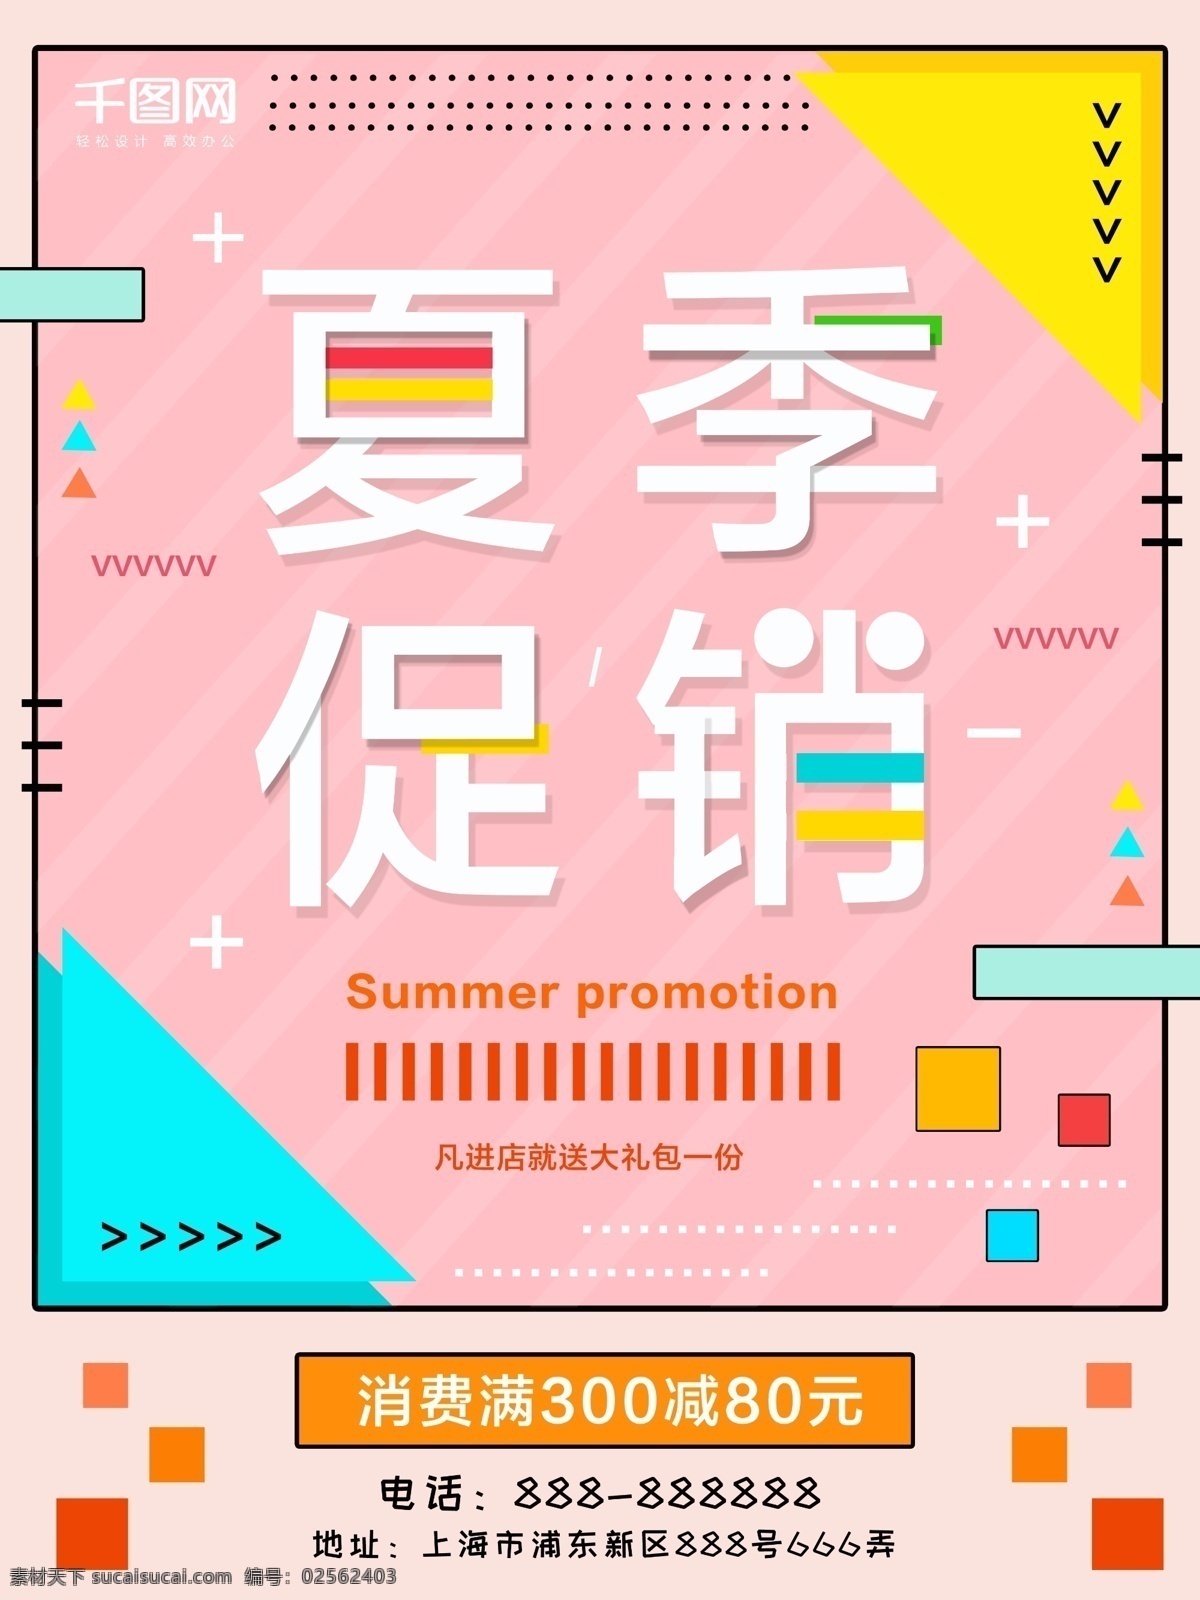 2018 夏季 促销 商场促销 夏季促销 促销海报 夏不为利 换季促销